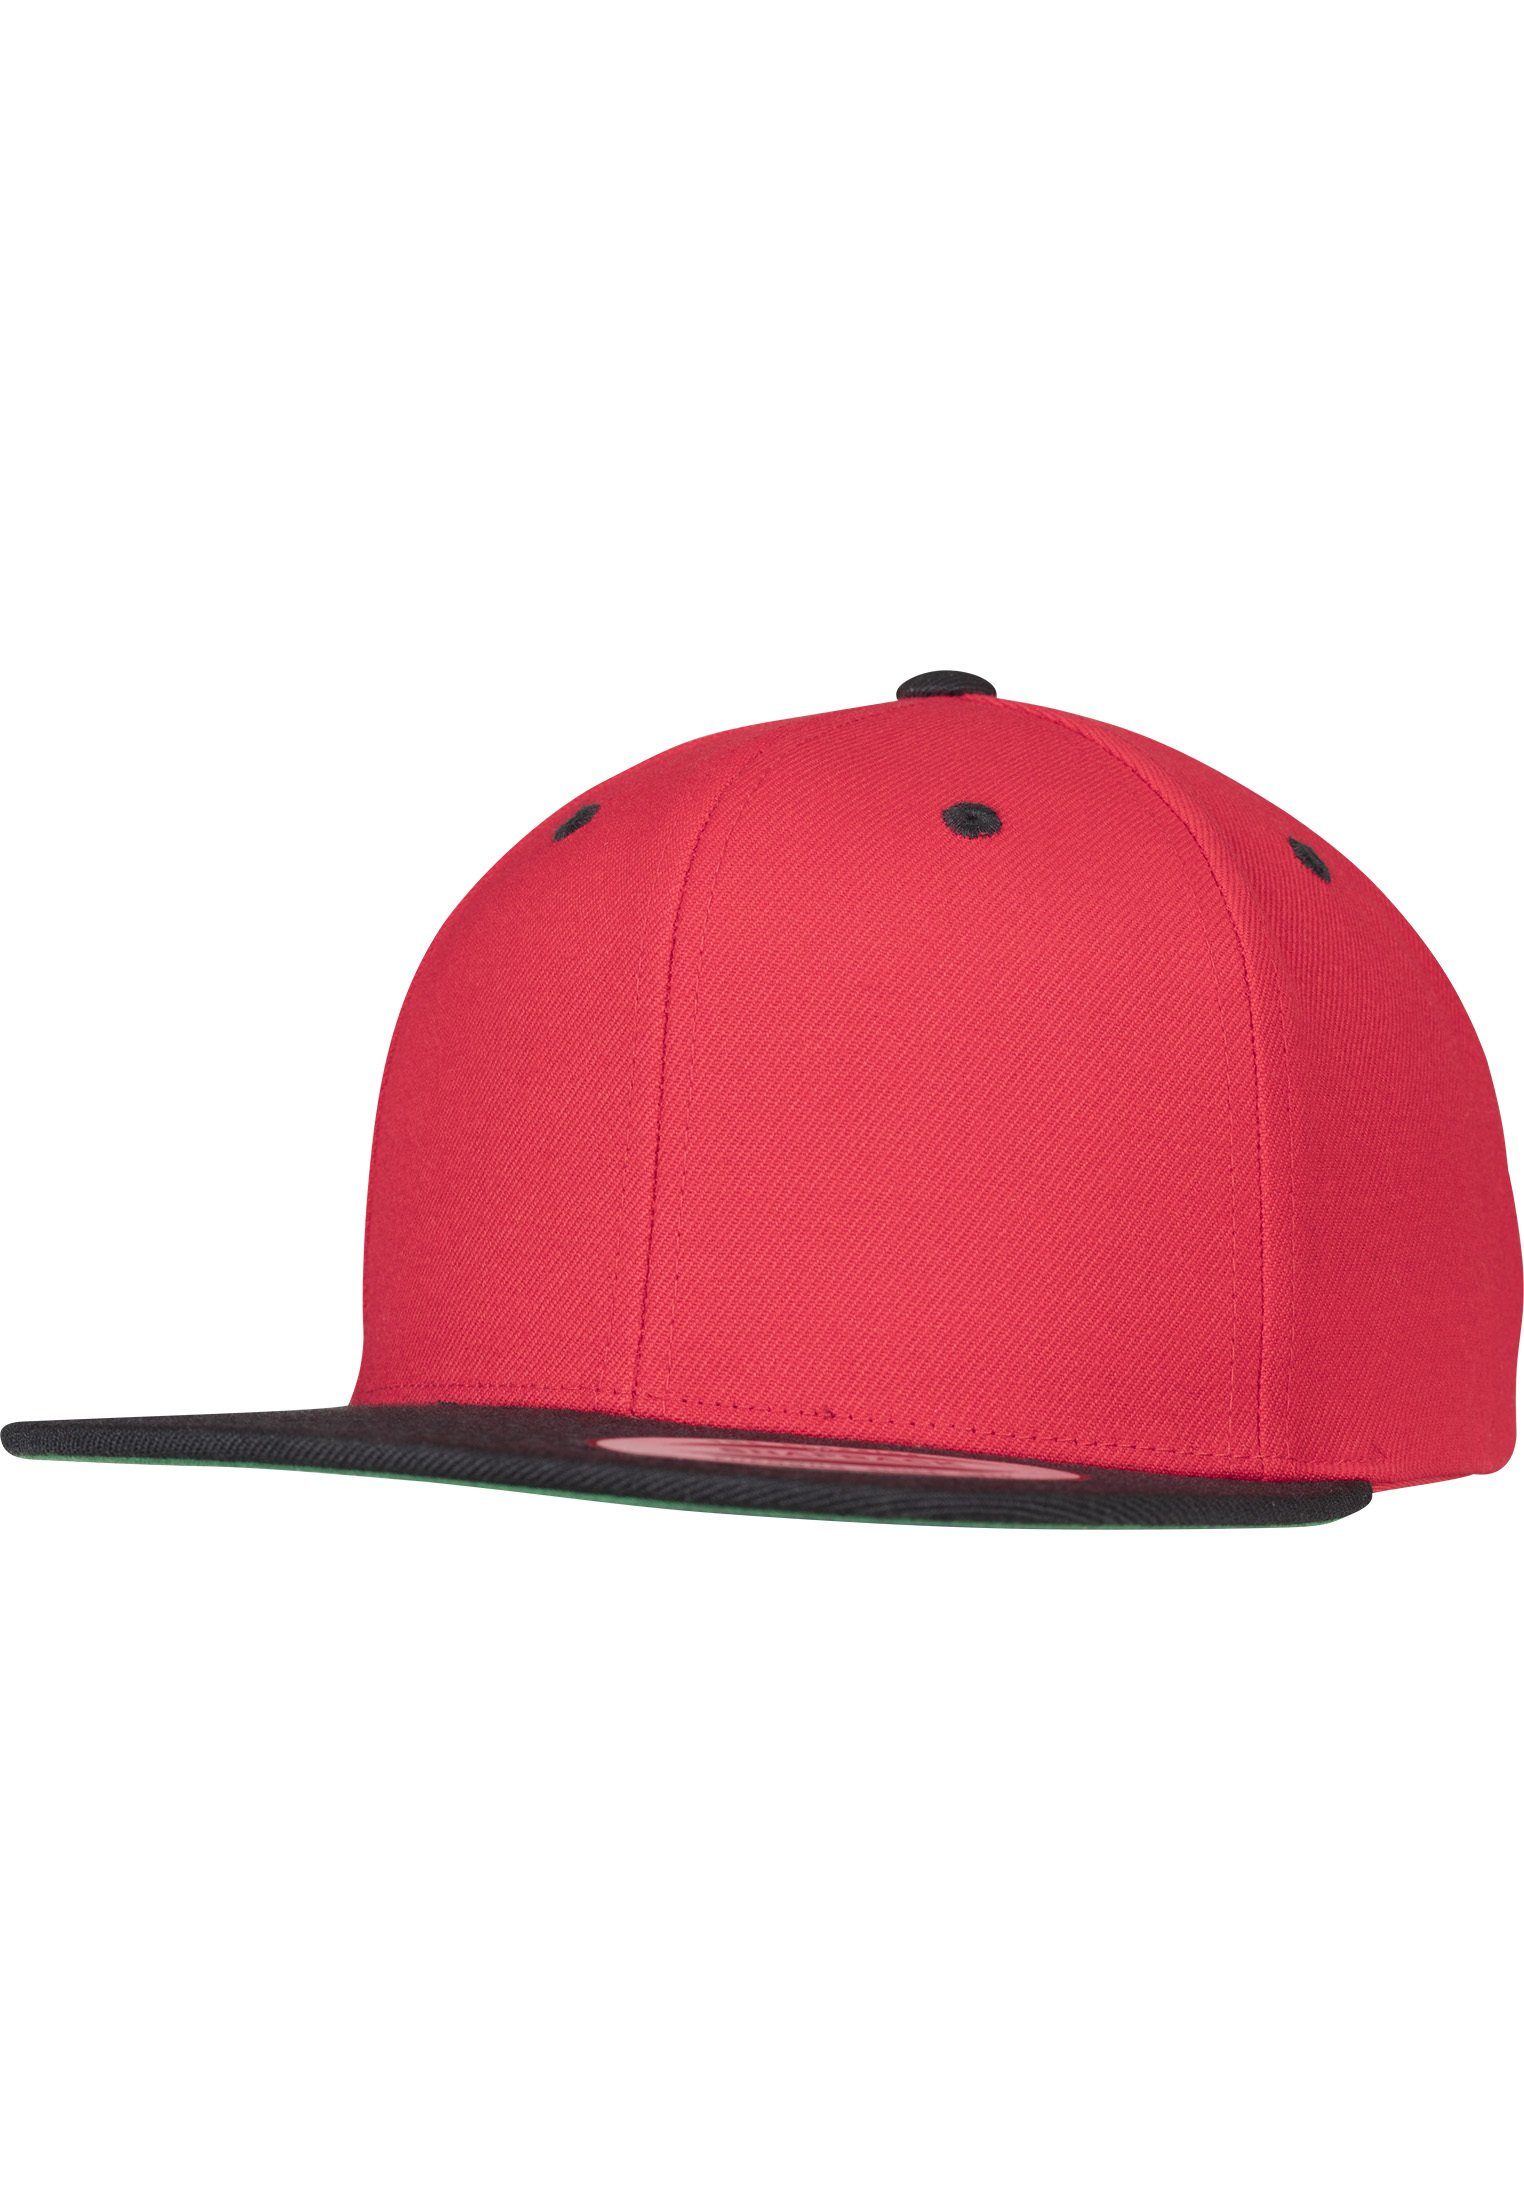 red/black Flexfit Classic Snapback 2-Tone Flex Snapback Cap